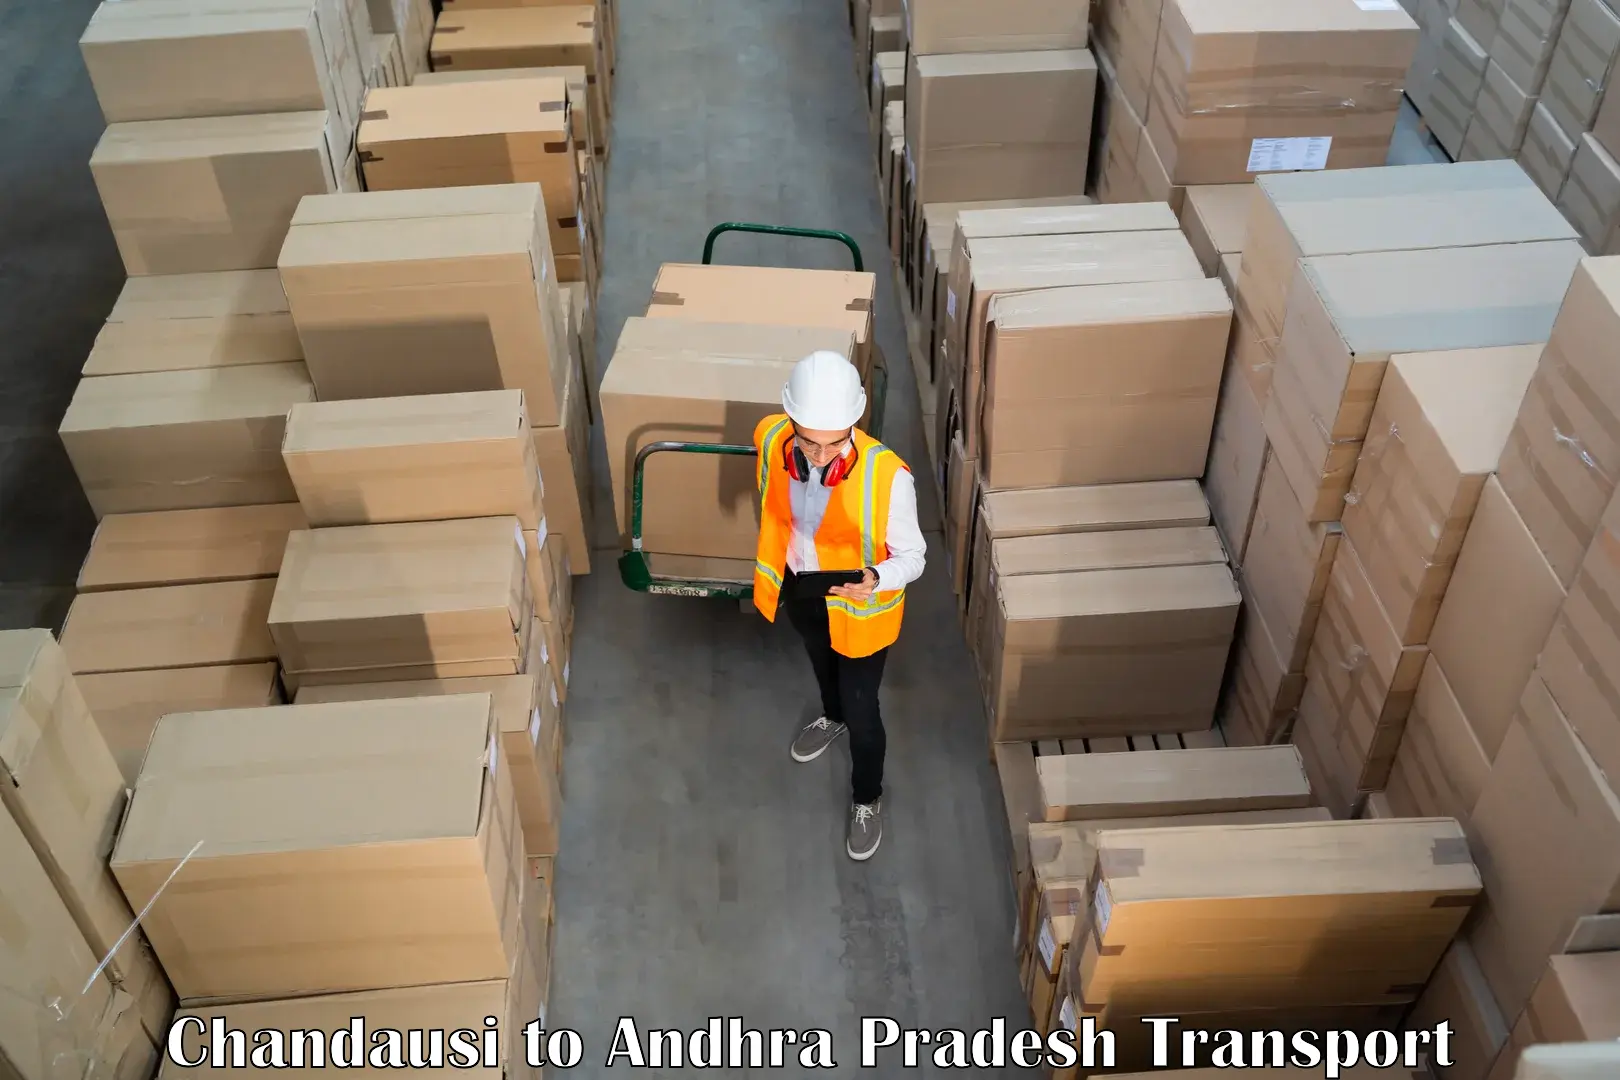 Truck transport companies in India Chandausi to Mulakalacheruvu